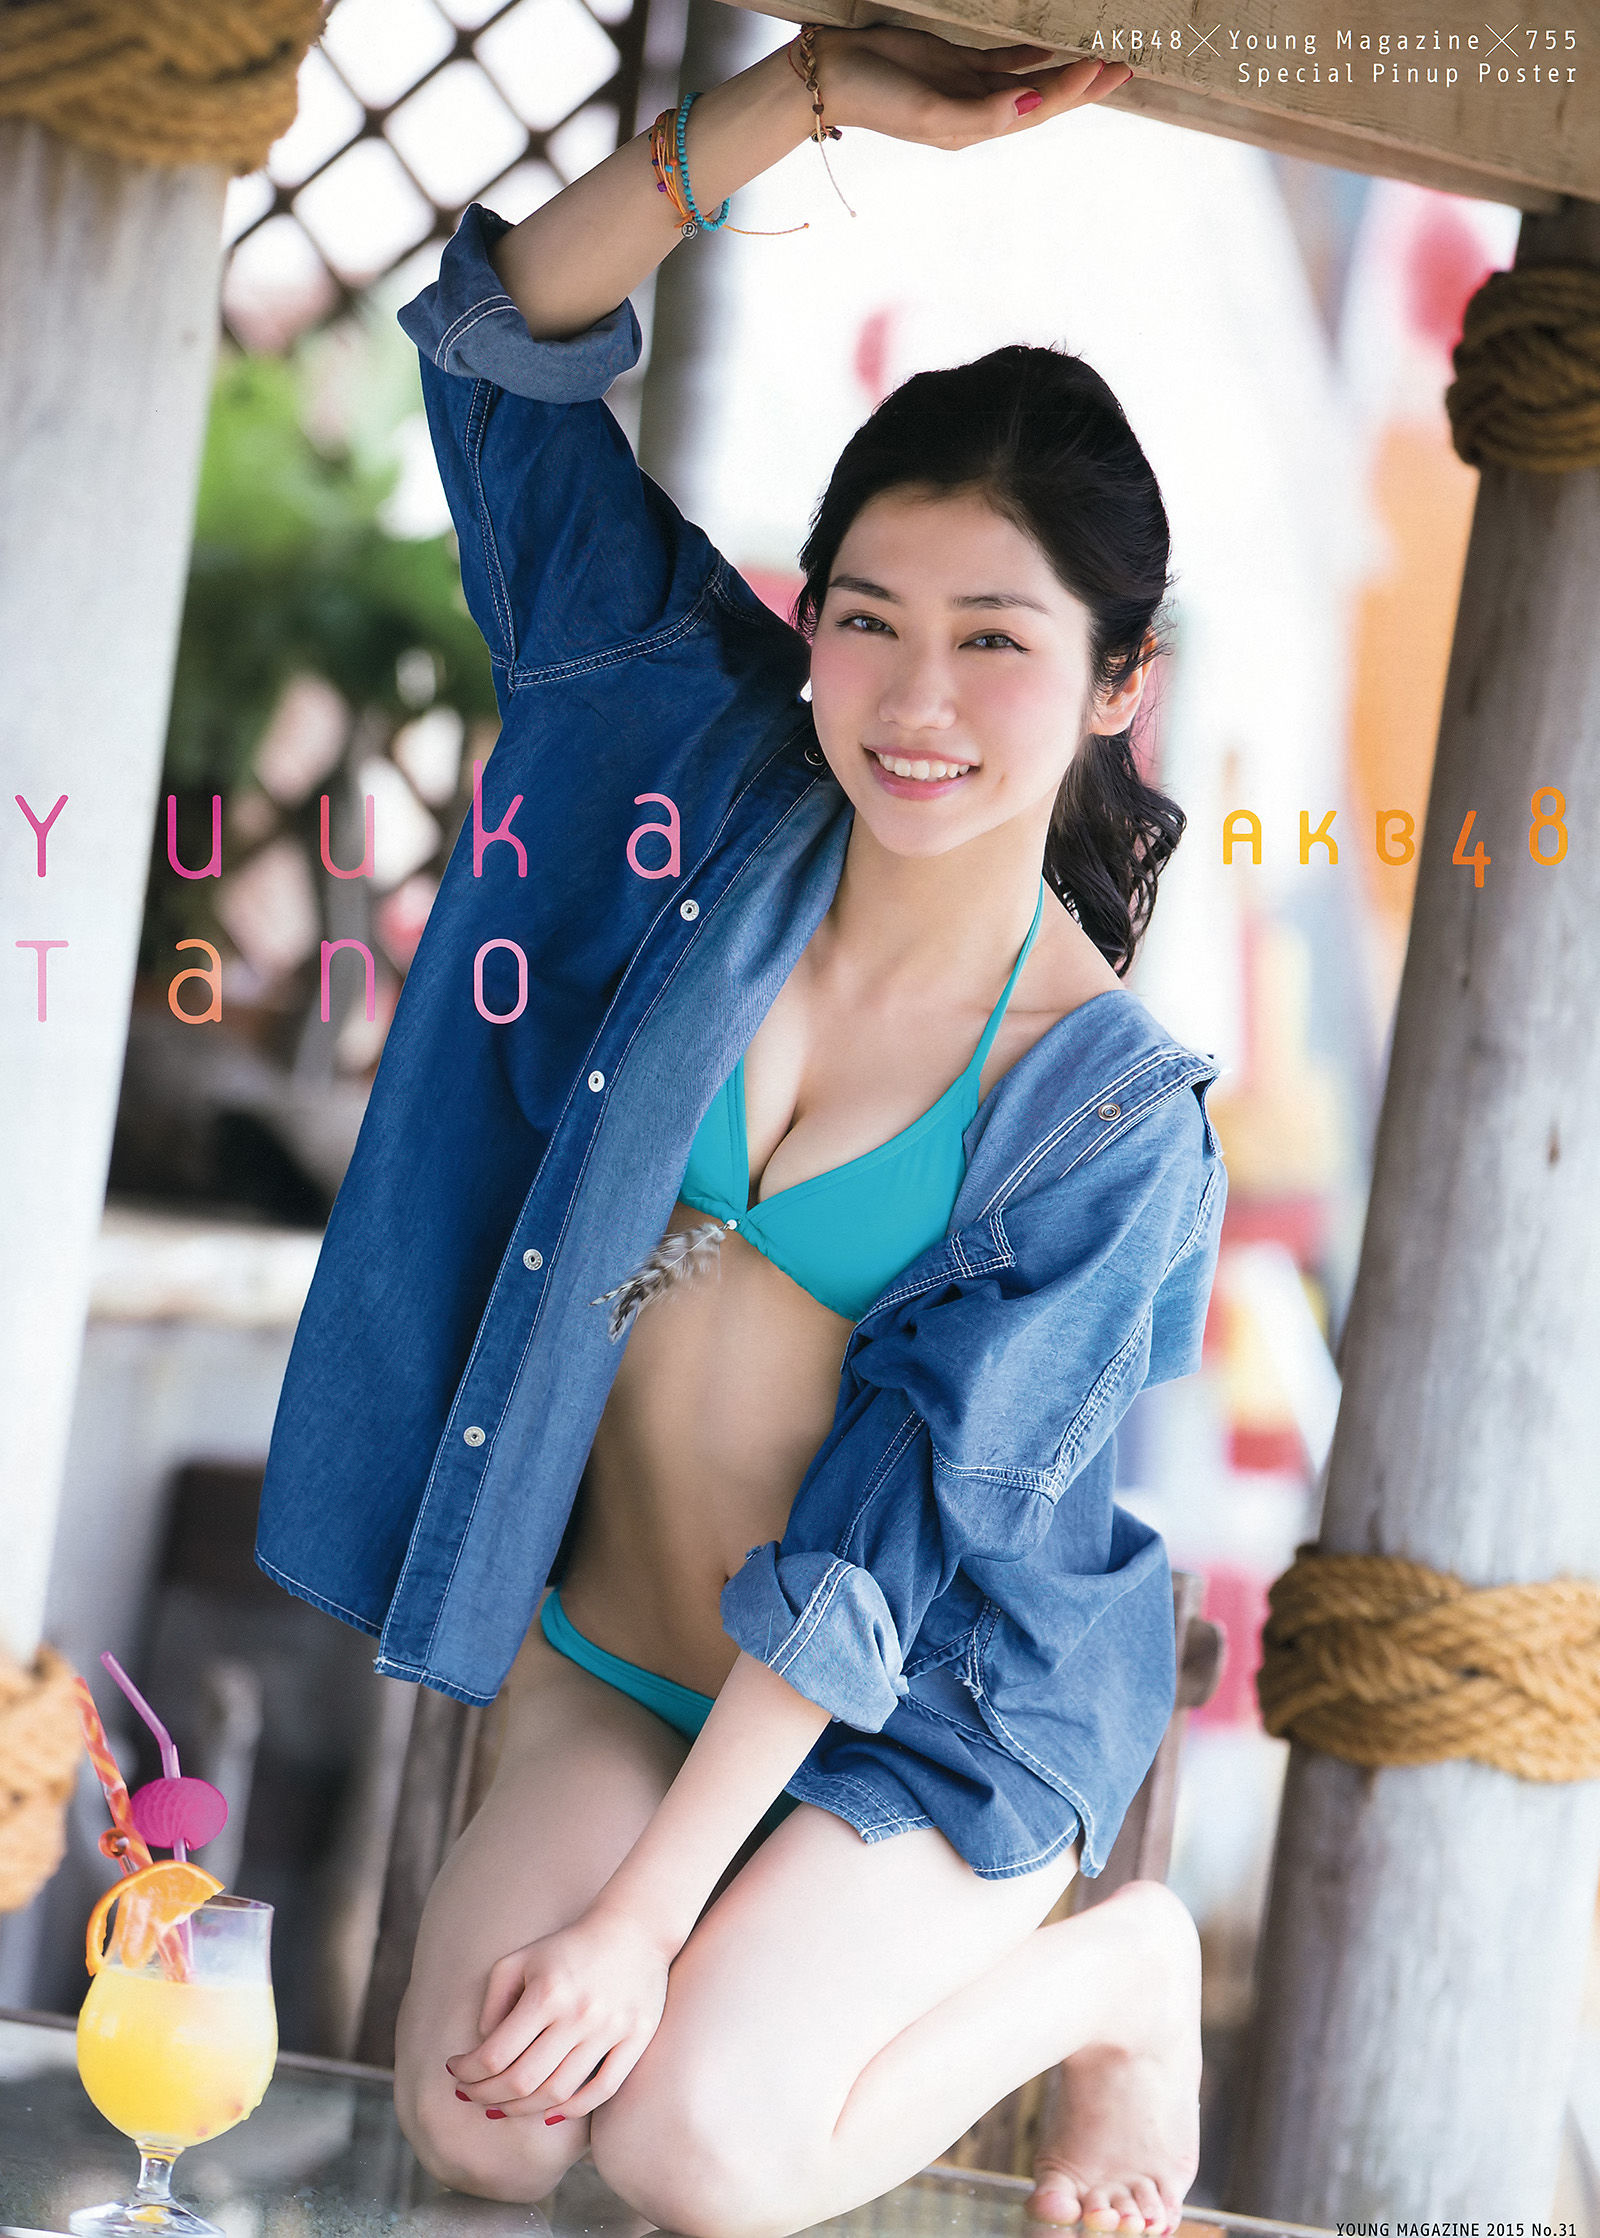 [Young Magazine] Okawa Blue, Tano Yuka, Murayama Ayaki 2015 No.31 Photo Magazine Page 1 No.9d06bf